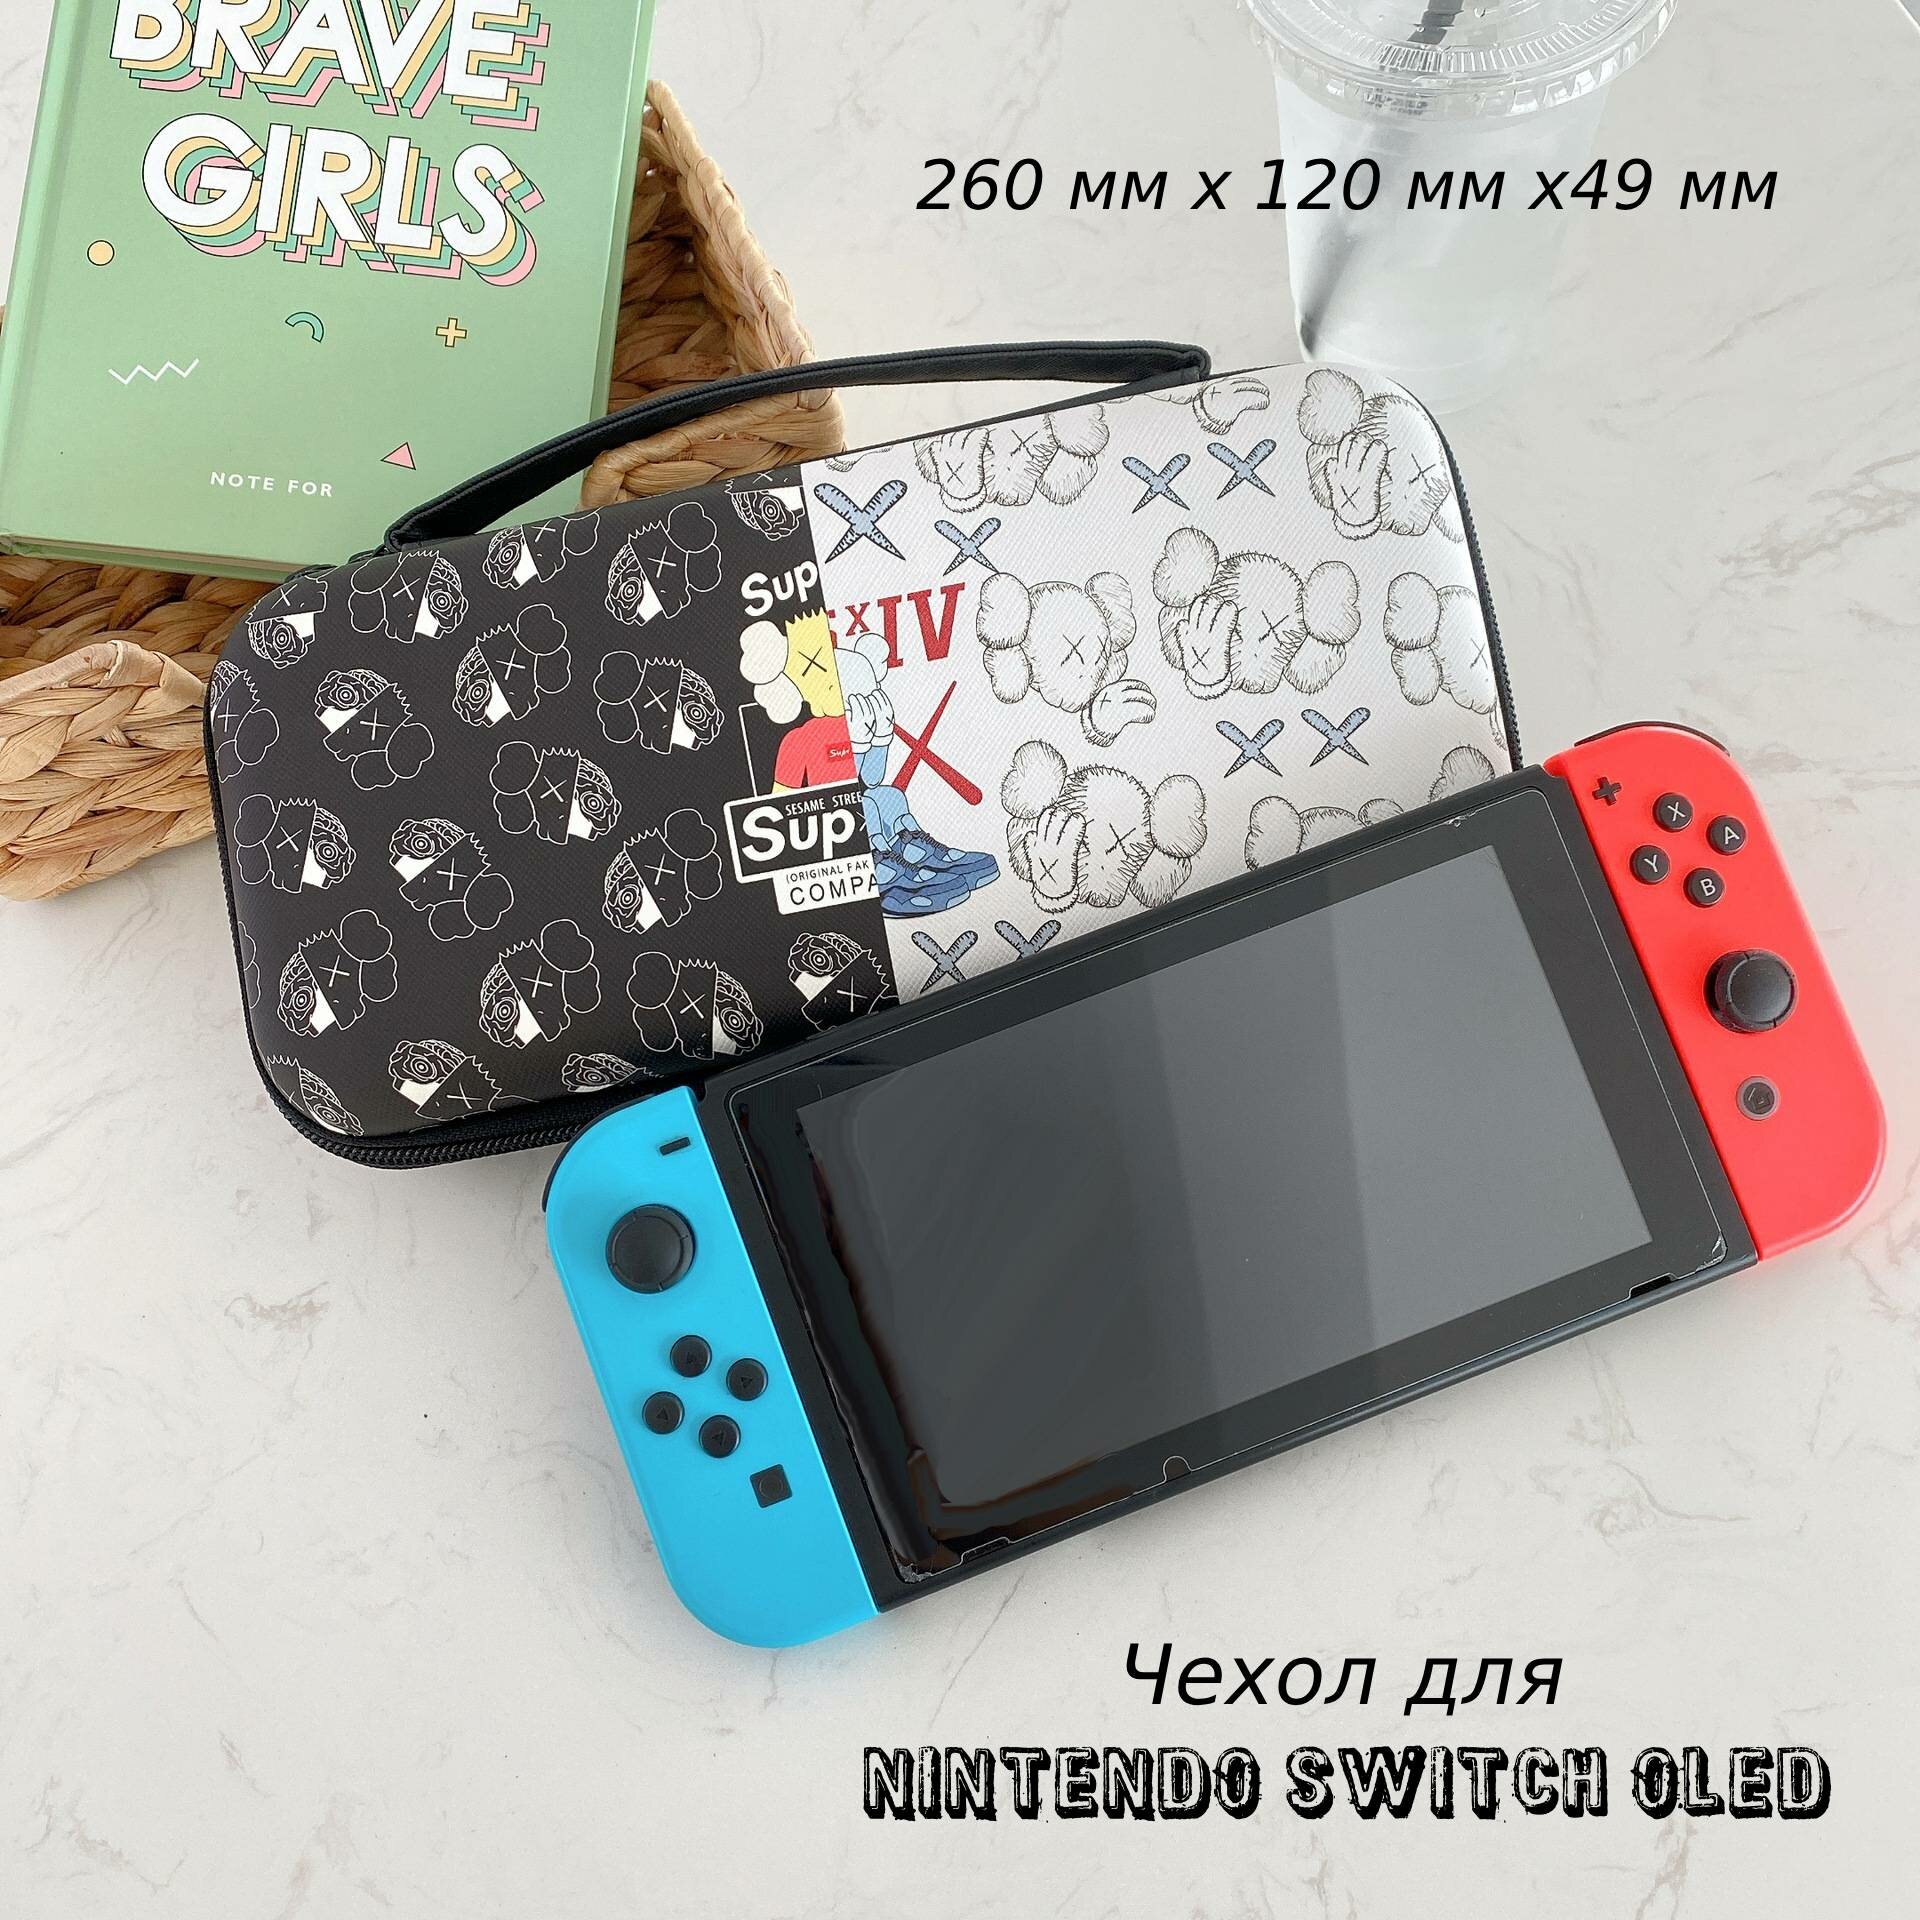 Защитный чехол, кейс для игровой приставки Nintendo Switch и Nintendo Switch OLED